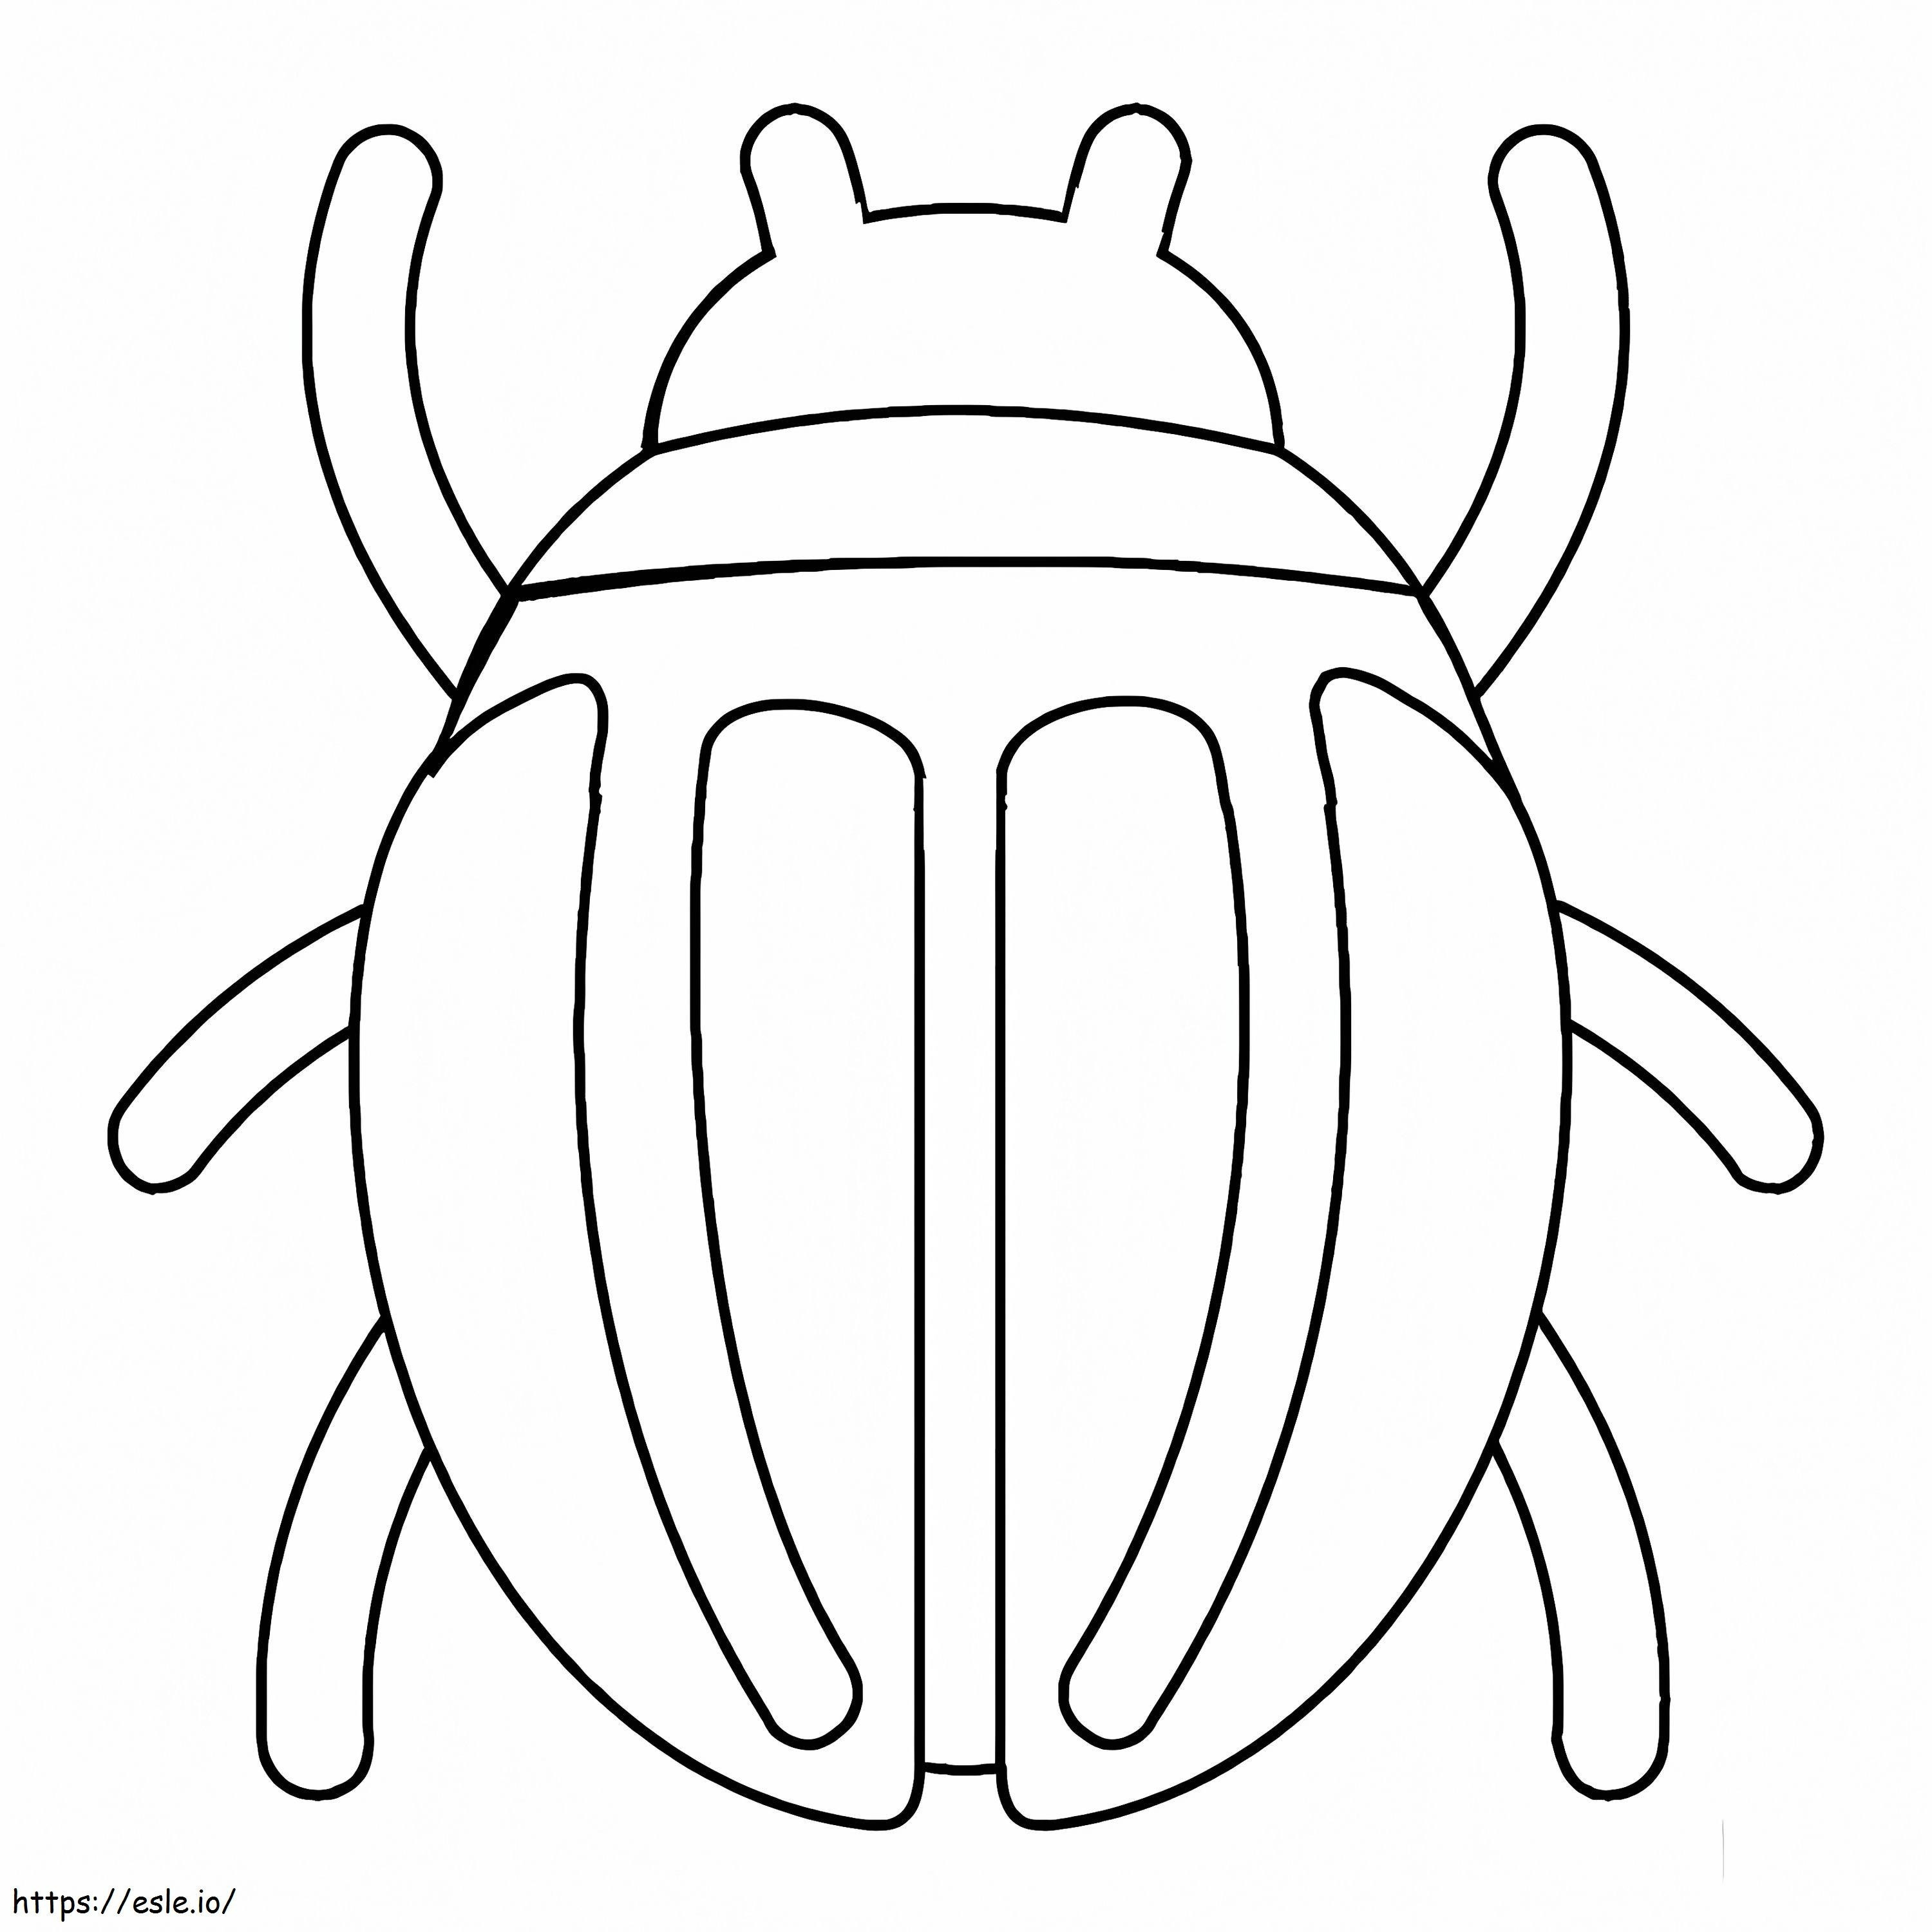 Escarabajo fácil para colorear